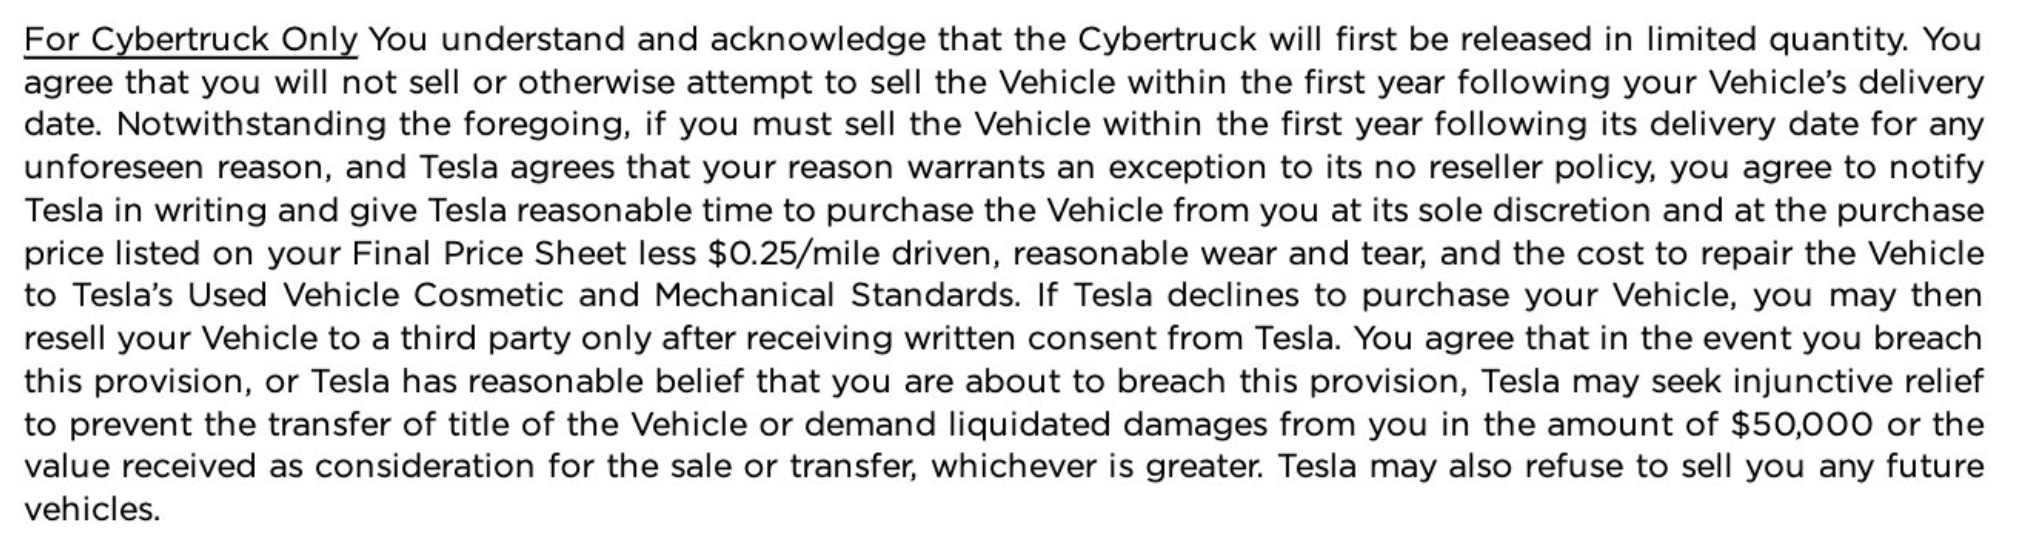 二手车商谈 Cybertruck 的转售协议